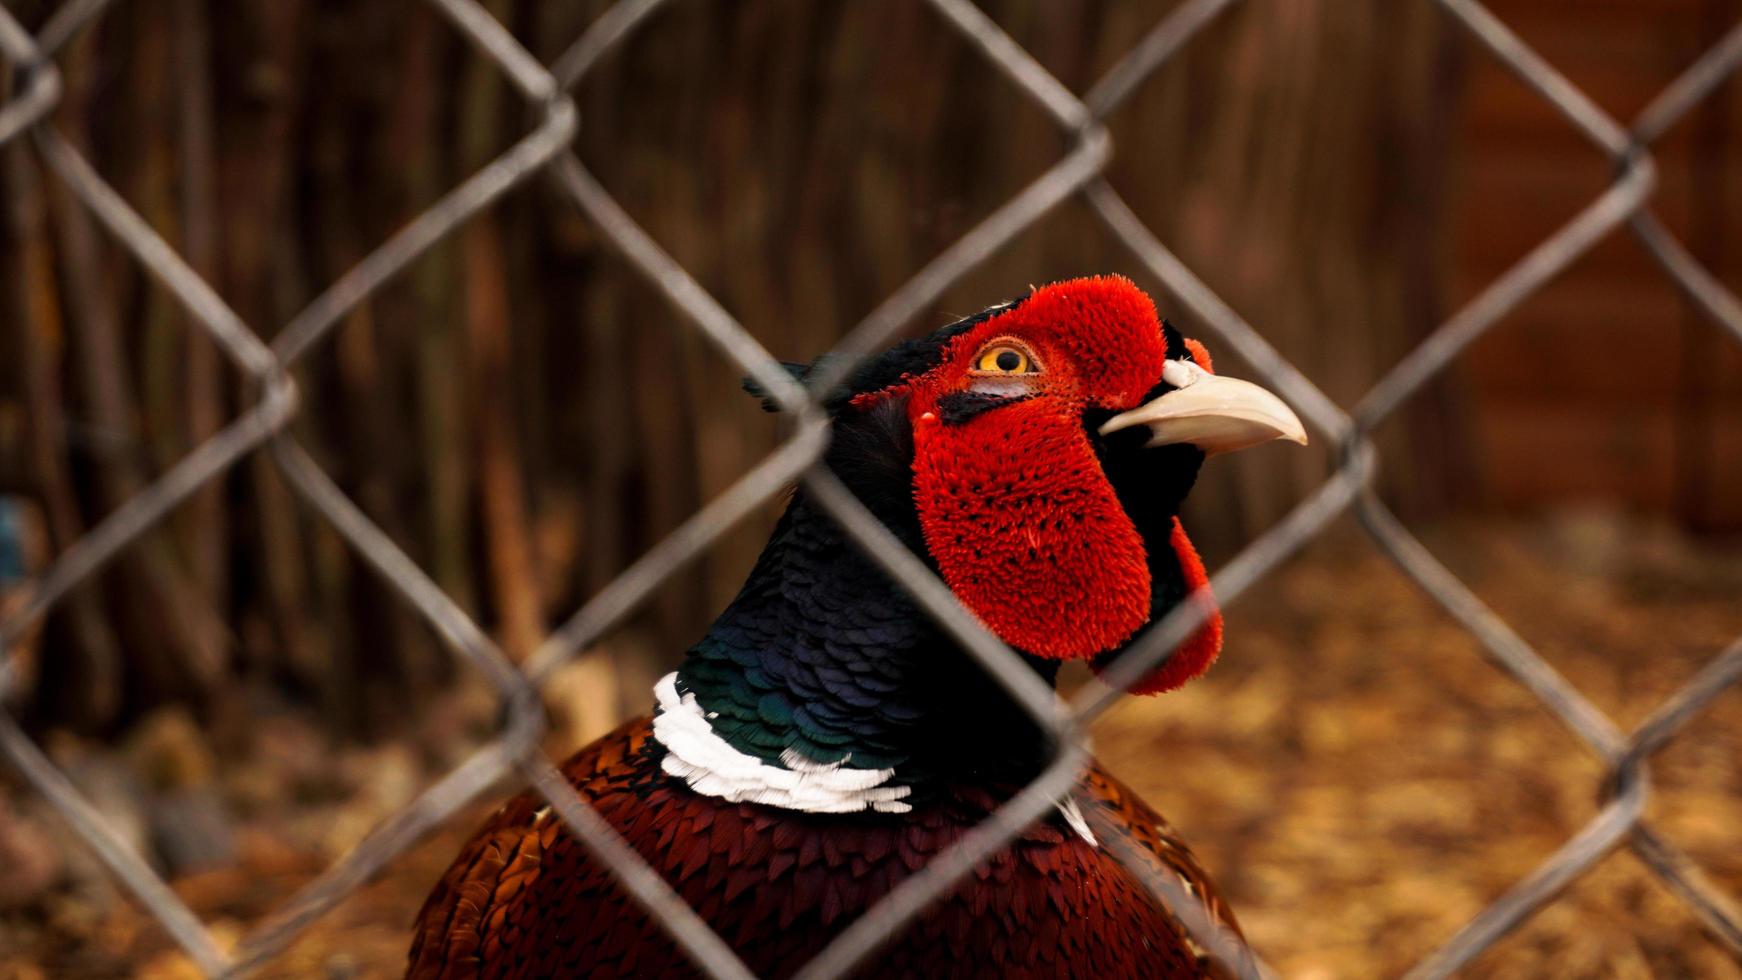 Jagd auf Fasan in einem Käfig. Vögel im Zoo oder Bauernhof foto